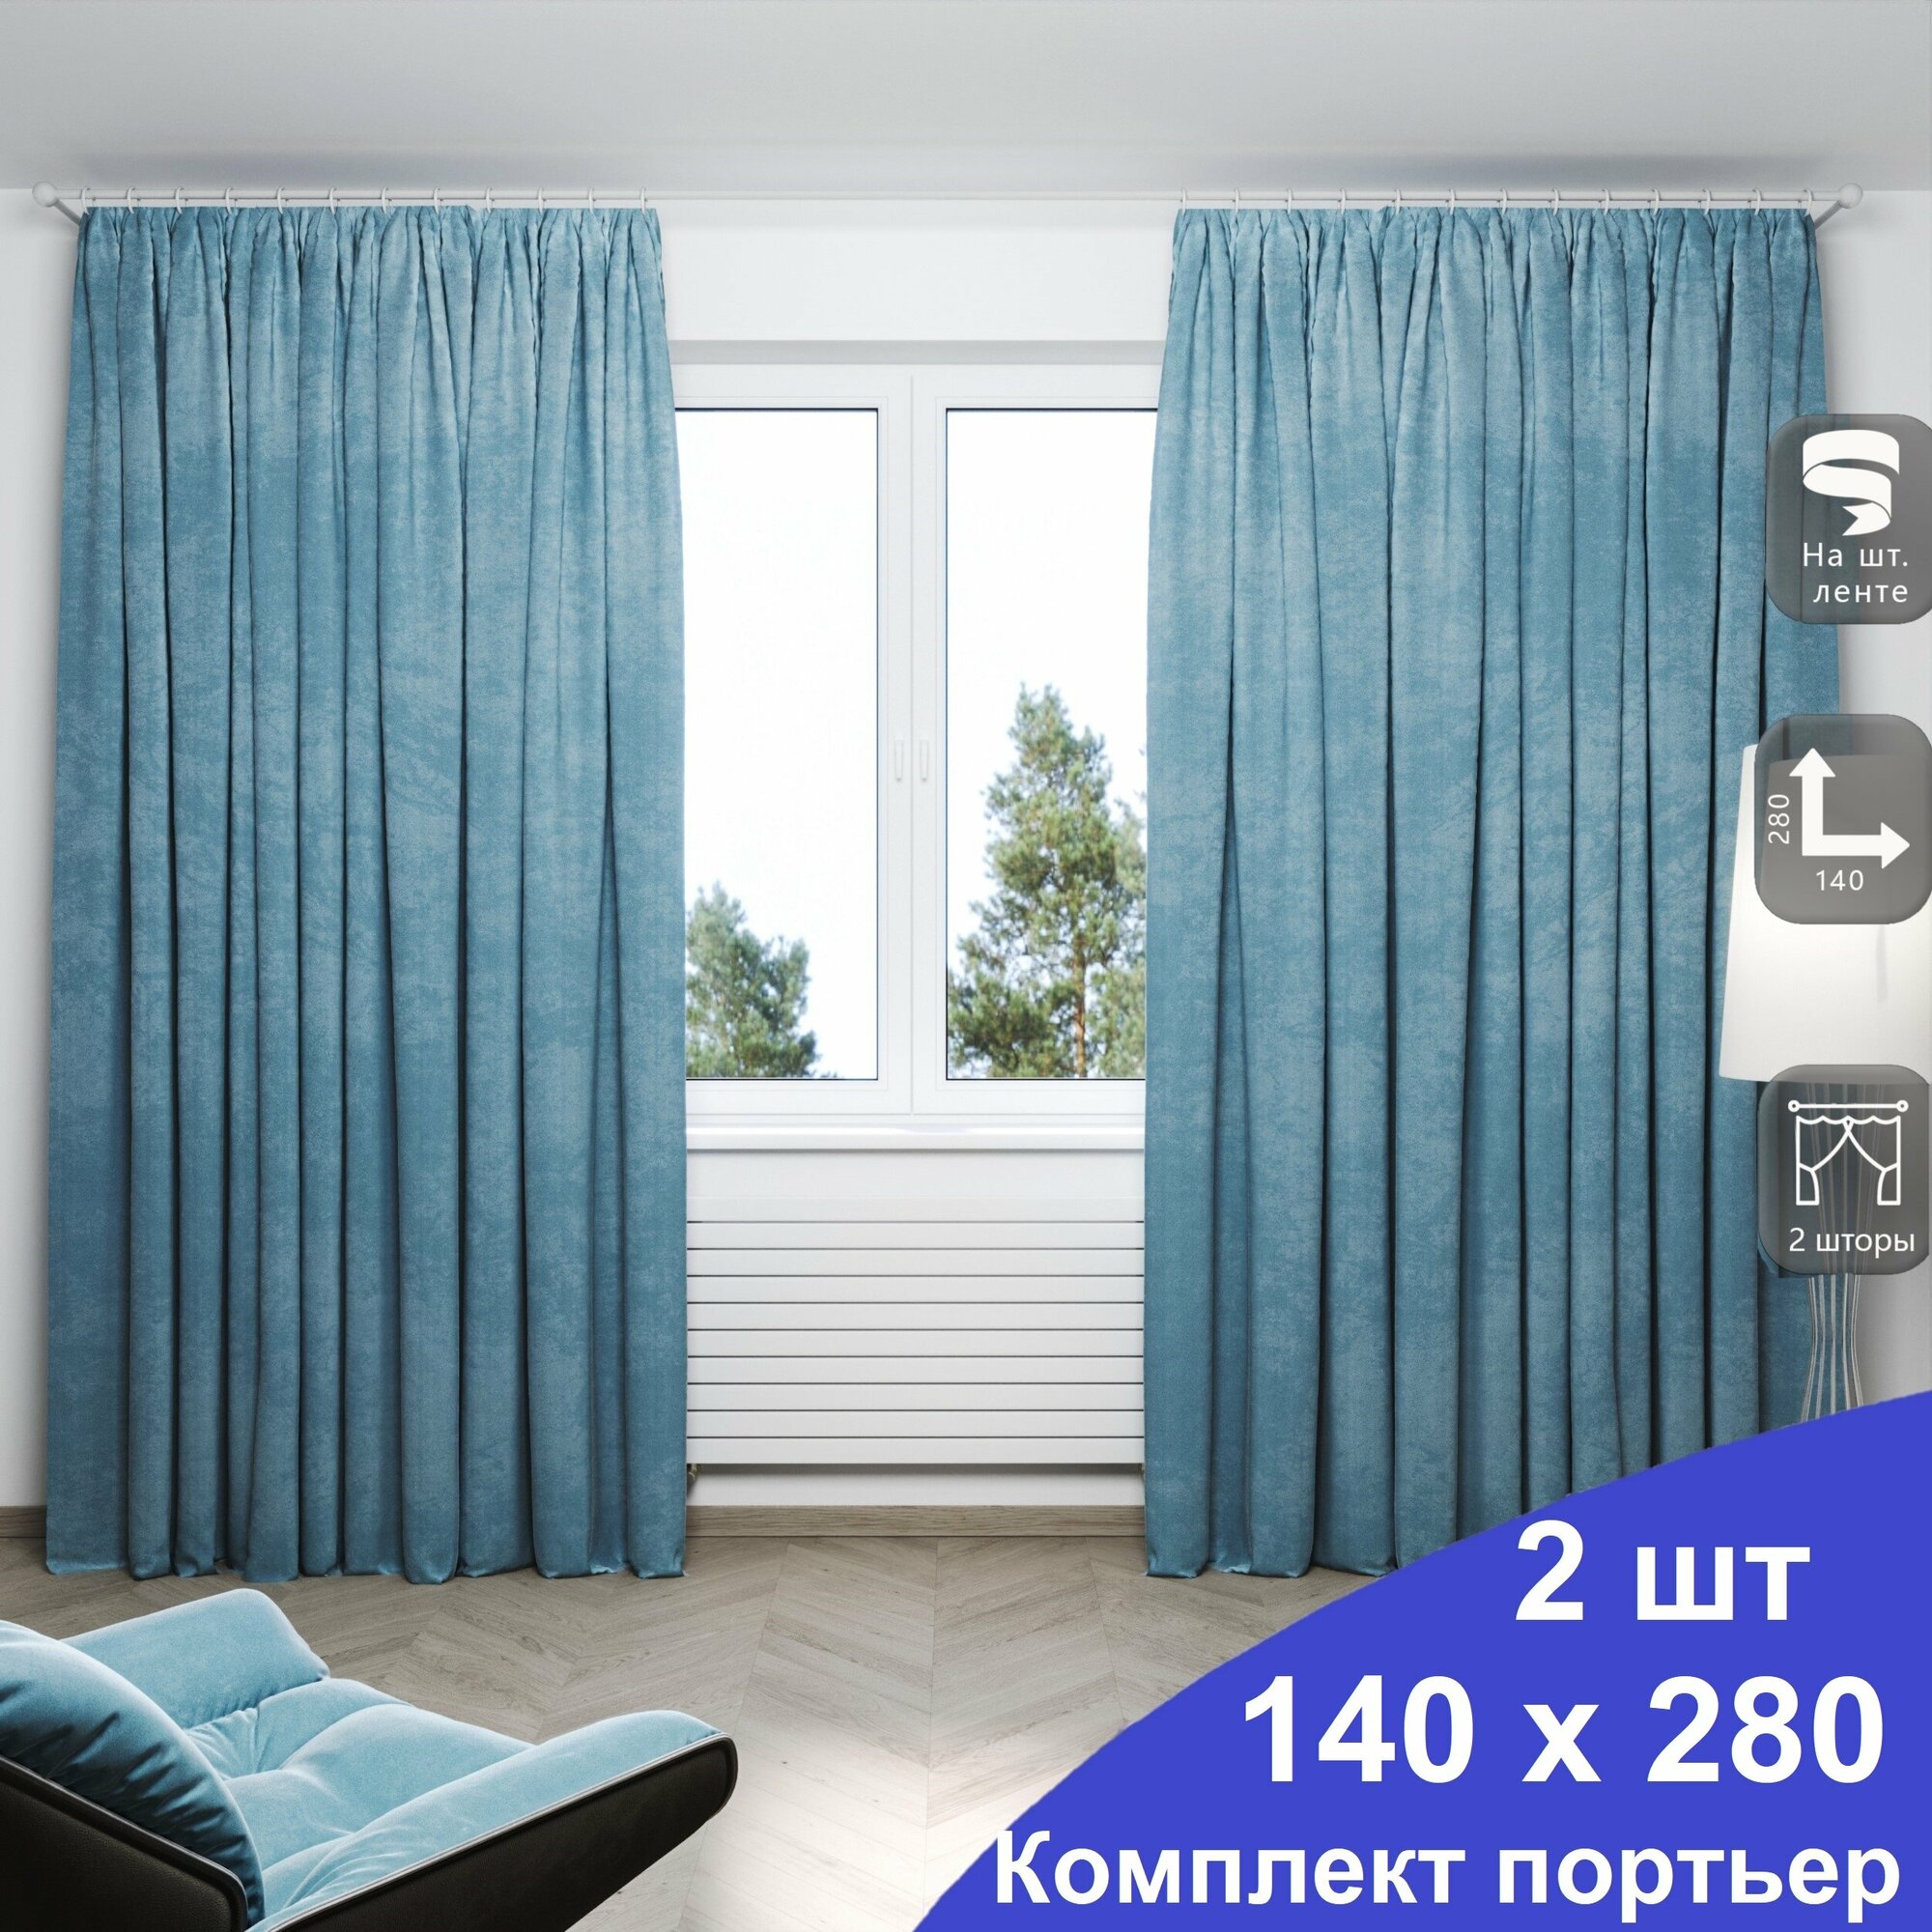 Комплект штор Канвас из однотонной ткани , цвет синий ширина 140см х высота 280см - 2шт.